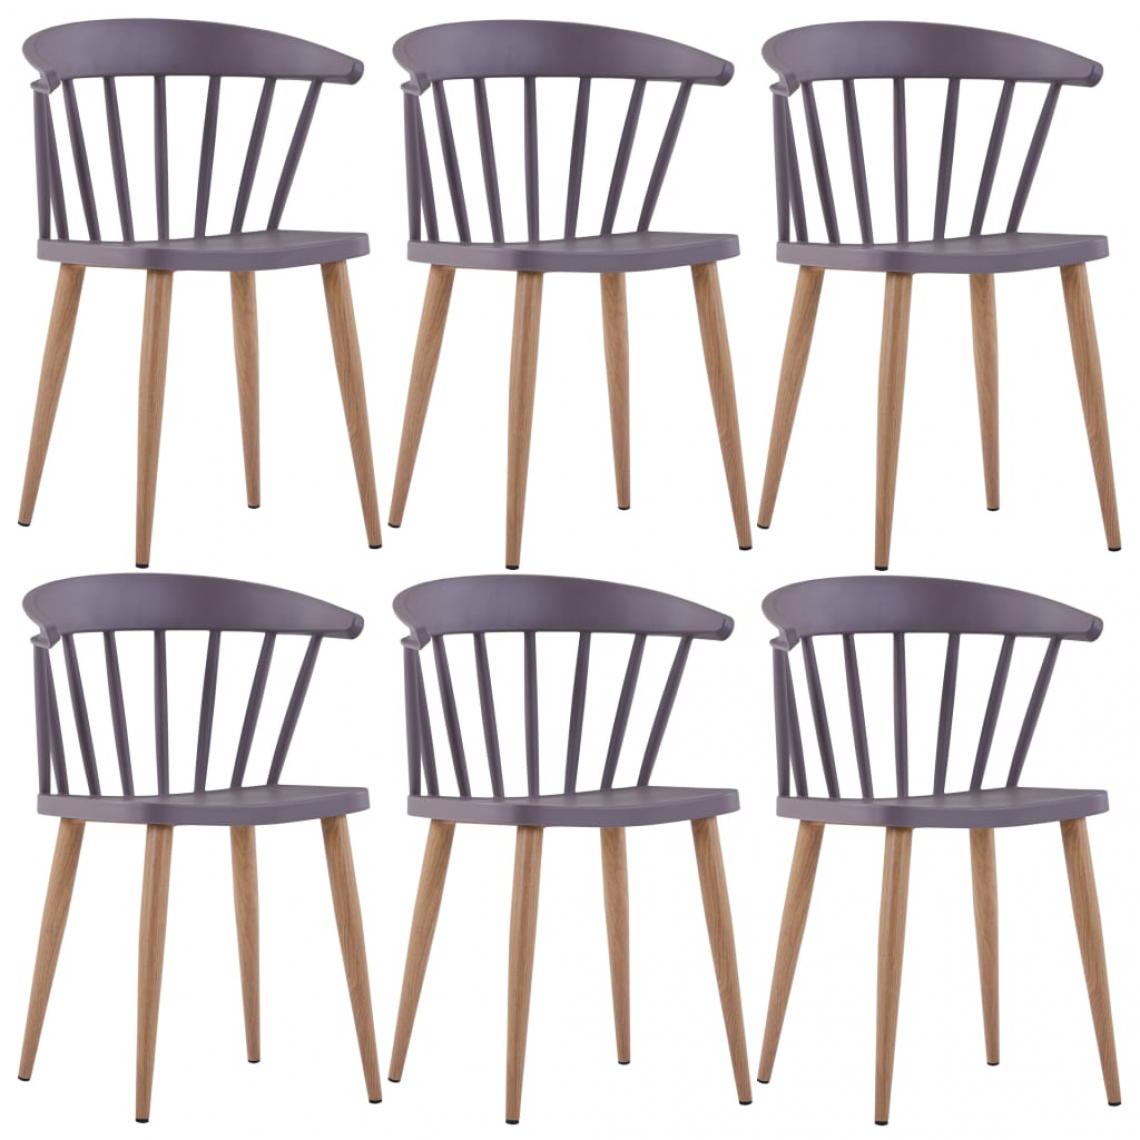 Decoshop26 - Lot de 6 chaises de salle à manger cuisine design élégant plastique gris et acier CDS022472 - Chaises